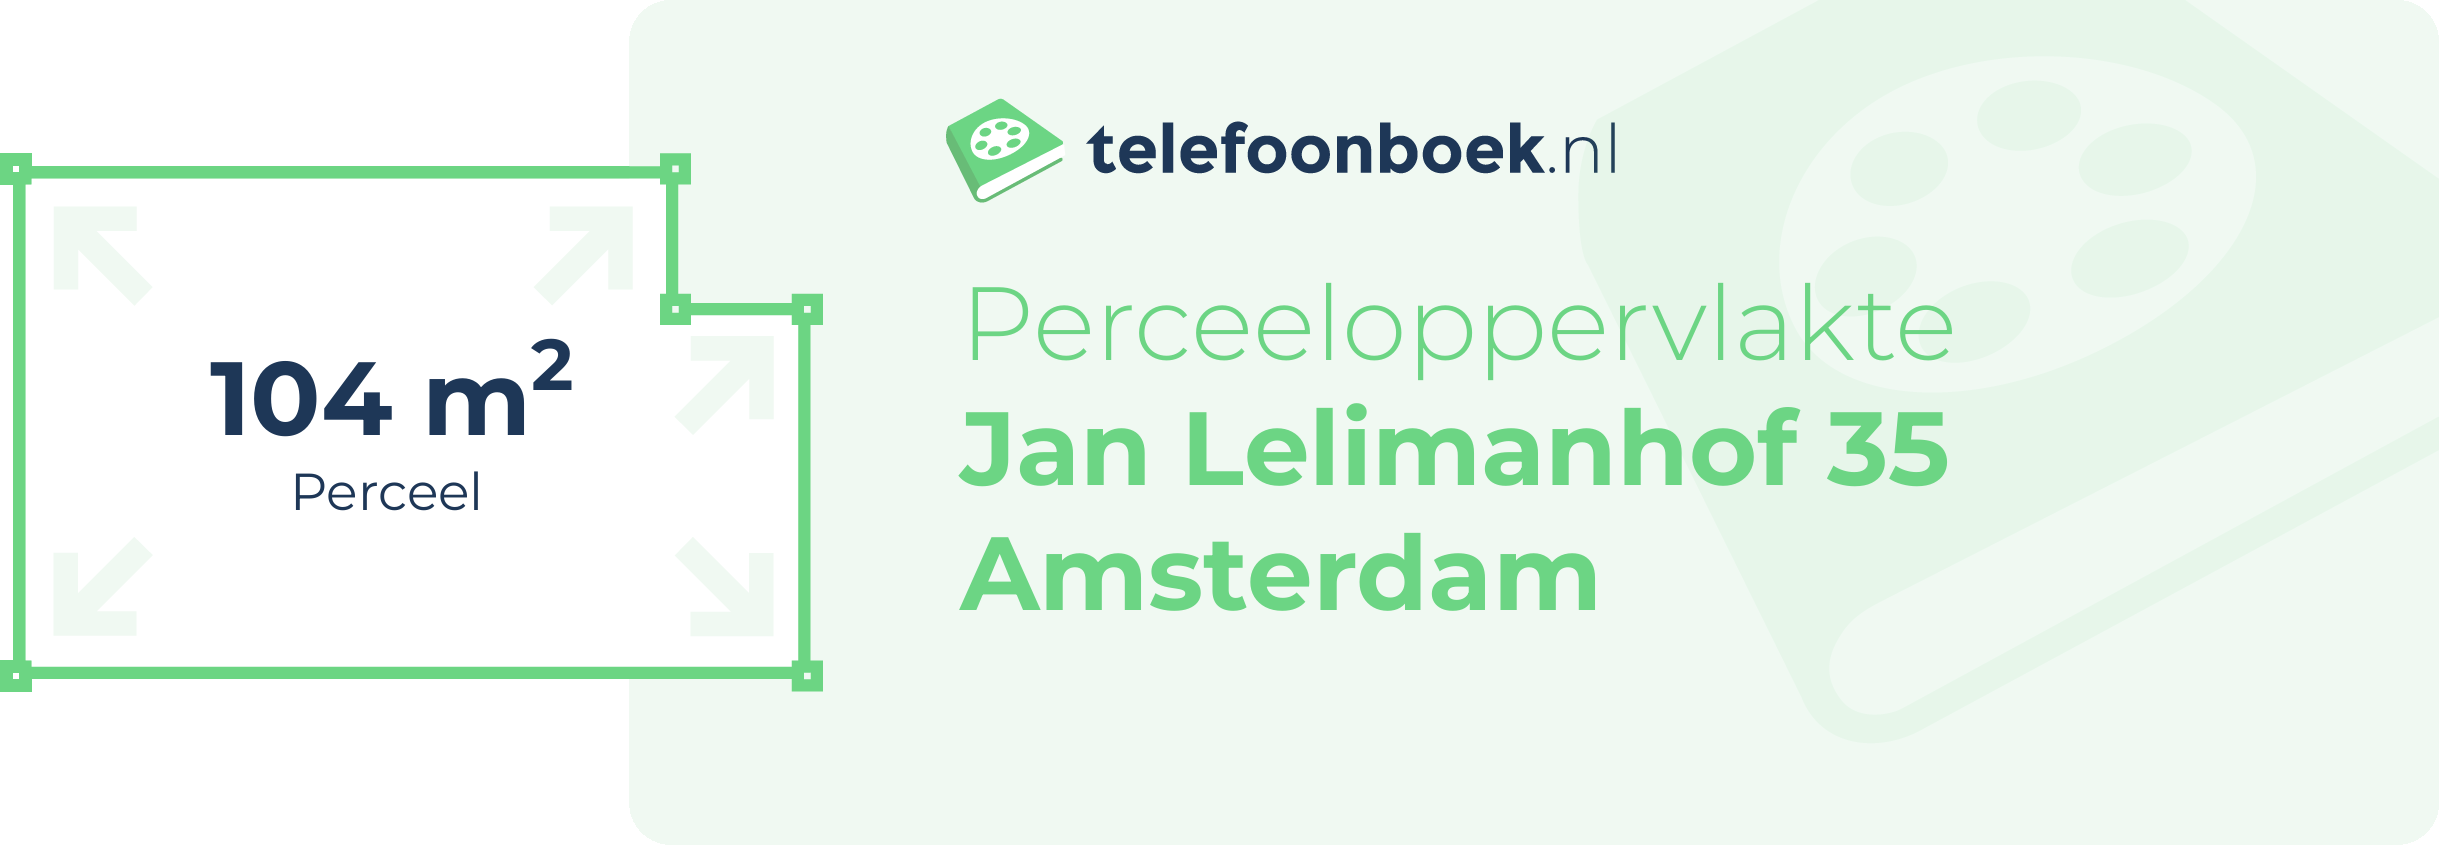 Perceeloppervlakte Jan Lelimanhof 35 Amsterdam